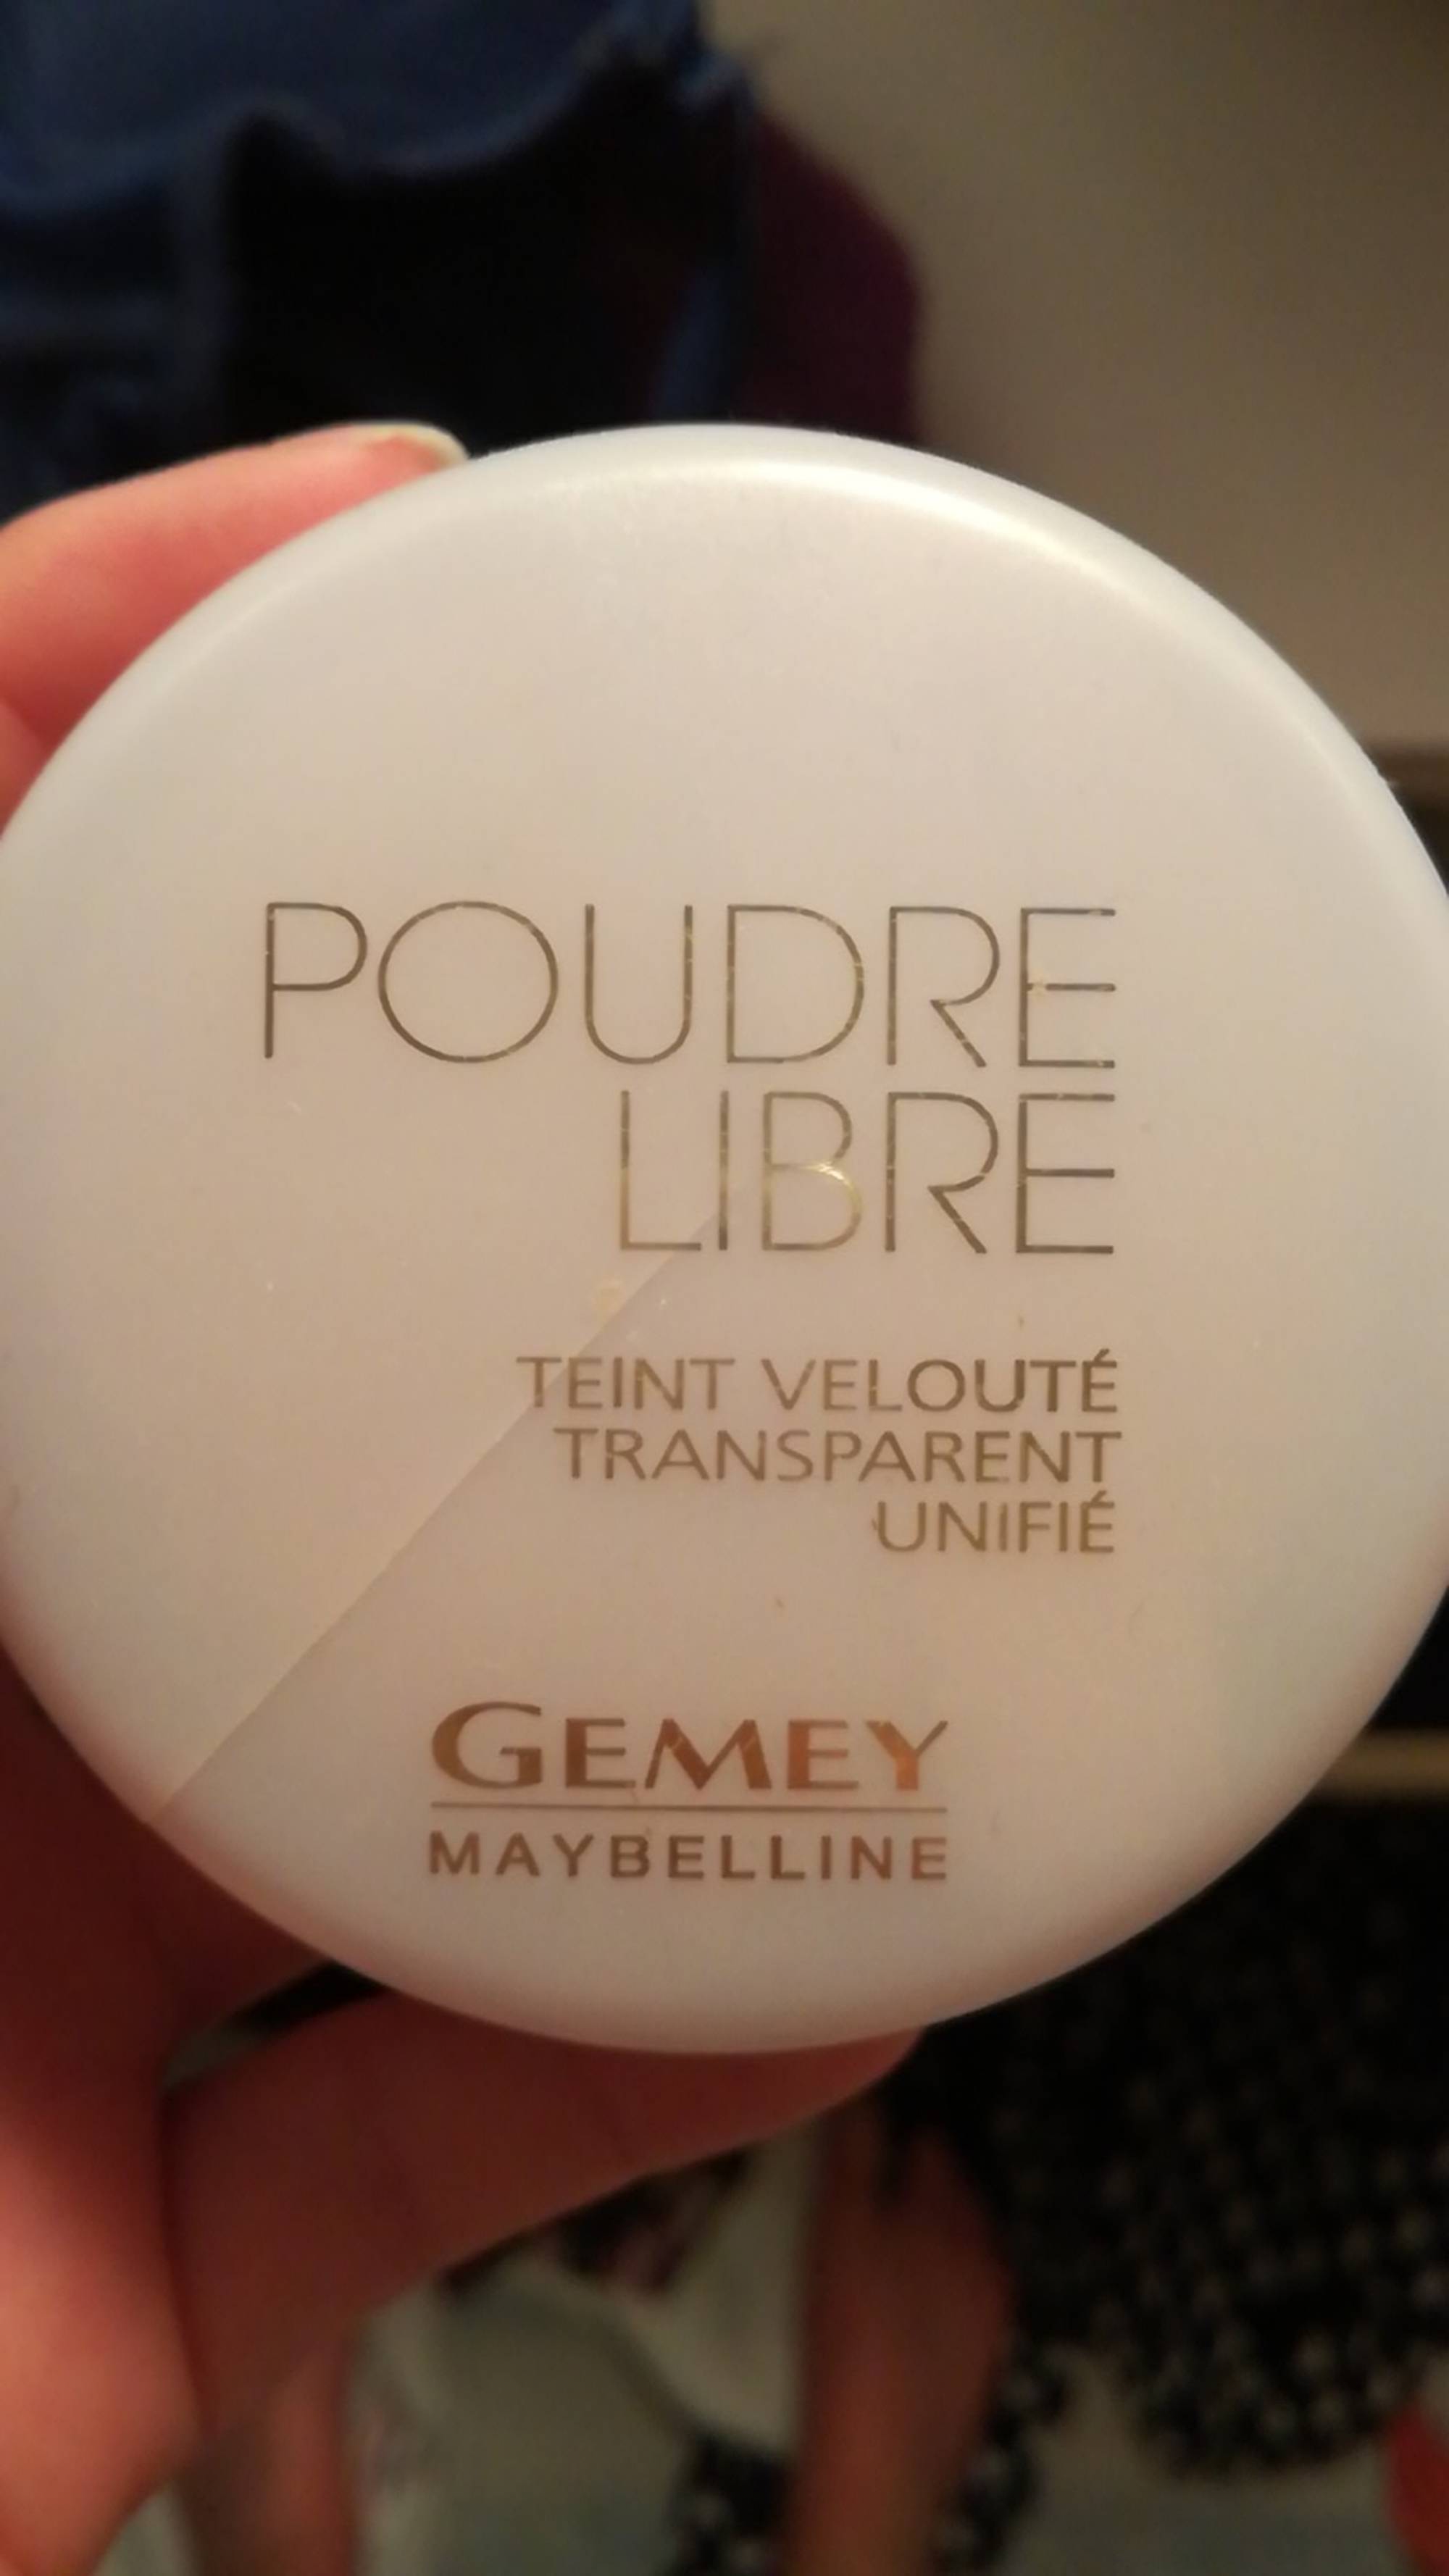 GEMEY MAYBELLINE - Poudre libre 04 brune cendrée